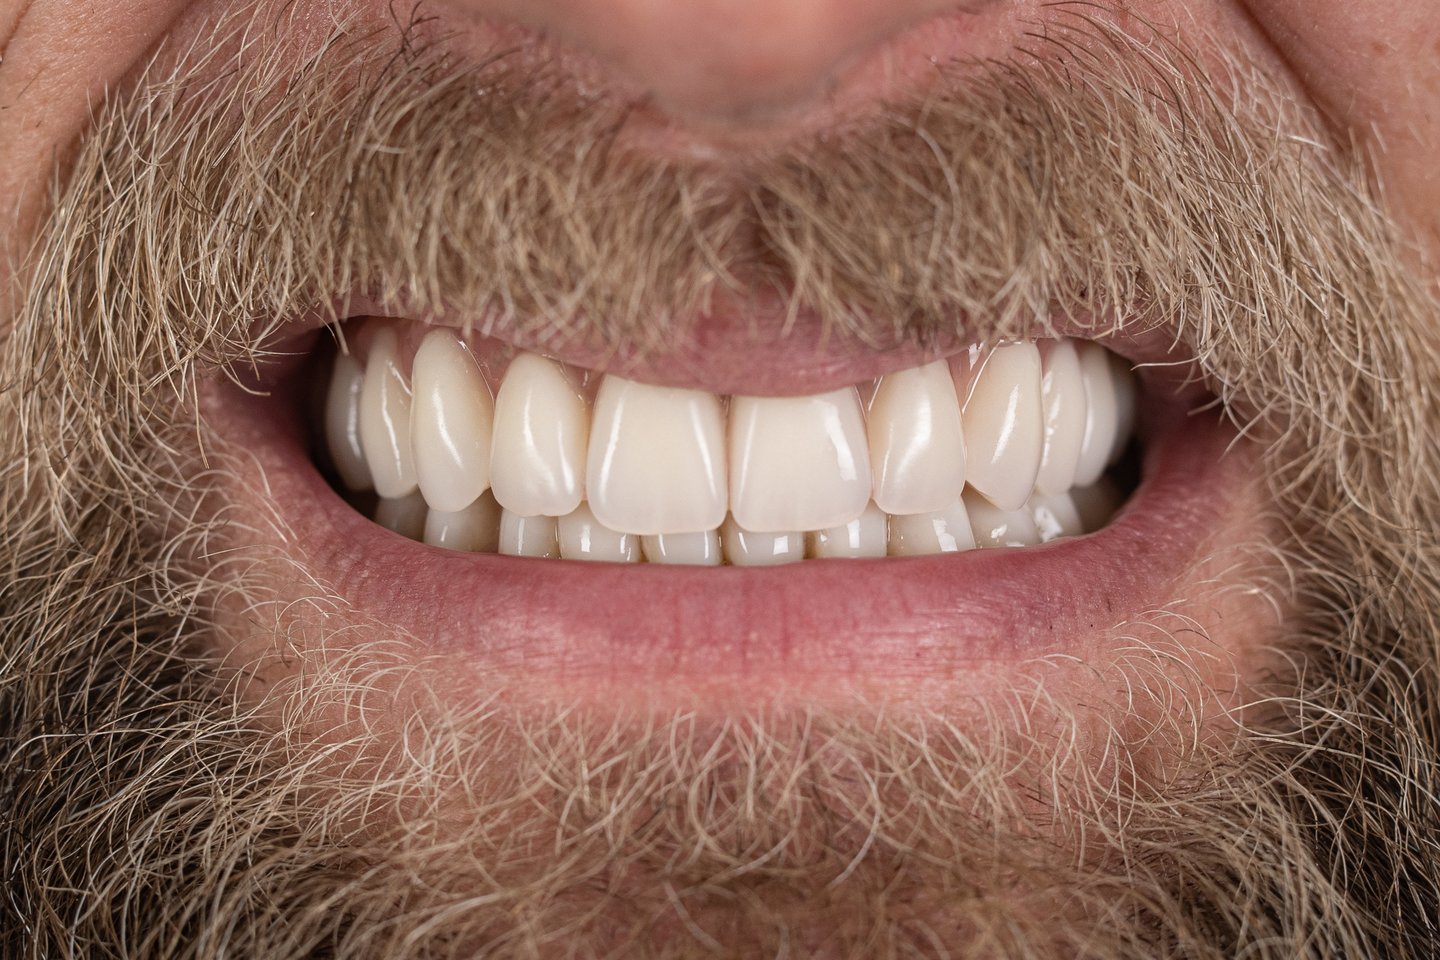 E.Česoniui buvo sudarytas kombinuotas gydymo planas. Pirmiausia pašalinti 8 dantys. Viršutiniam žandikauliui atlikta „Visi ant keturių“ implantacija, kai viso žandikaulio dantys atkuriami vos ant keturių implantų.